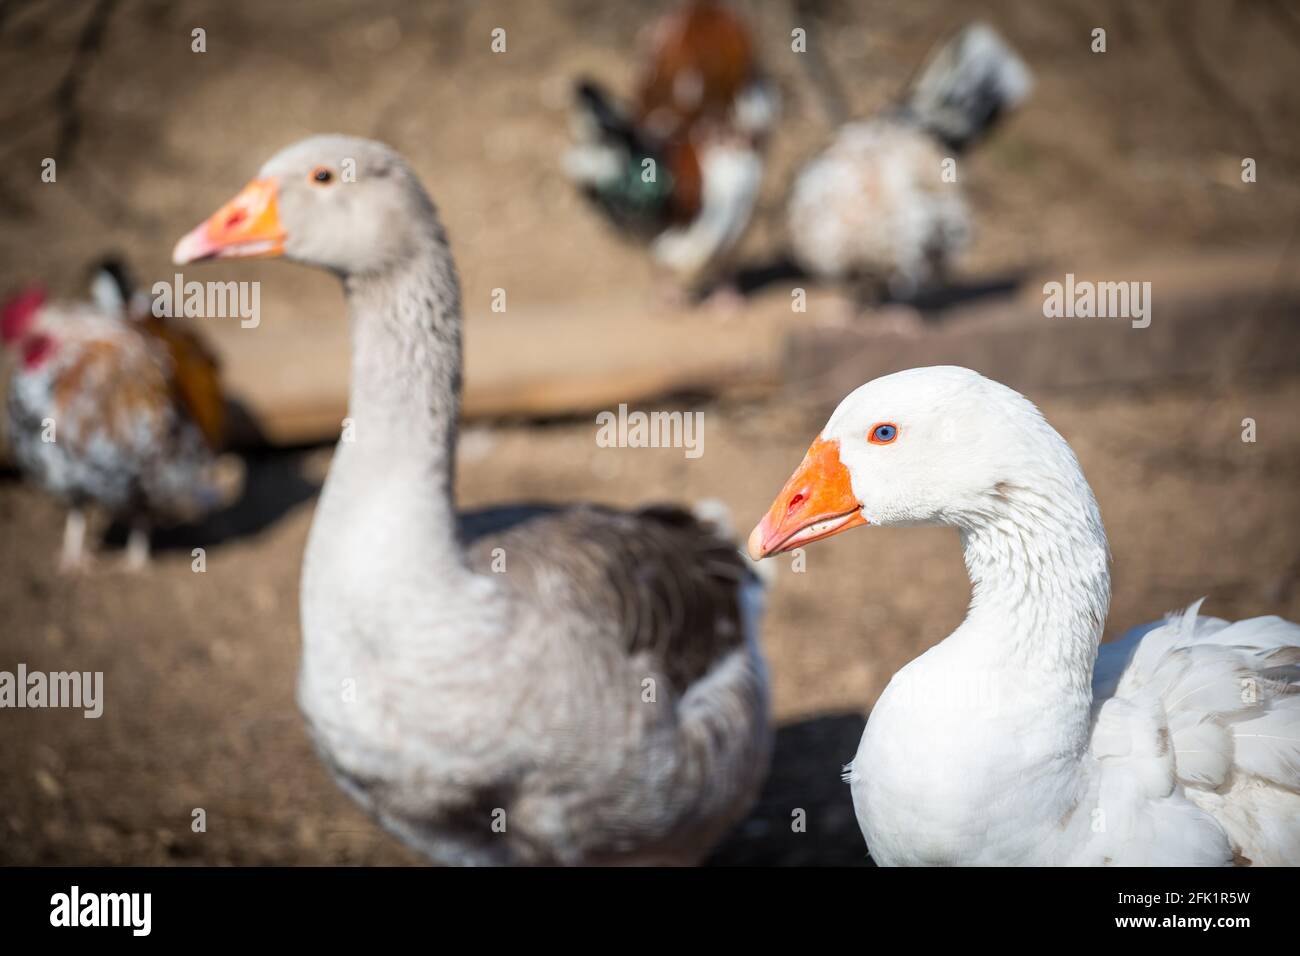 Österreichische Landgans, an endangered goose breed from Austria Stock Photo